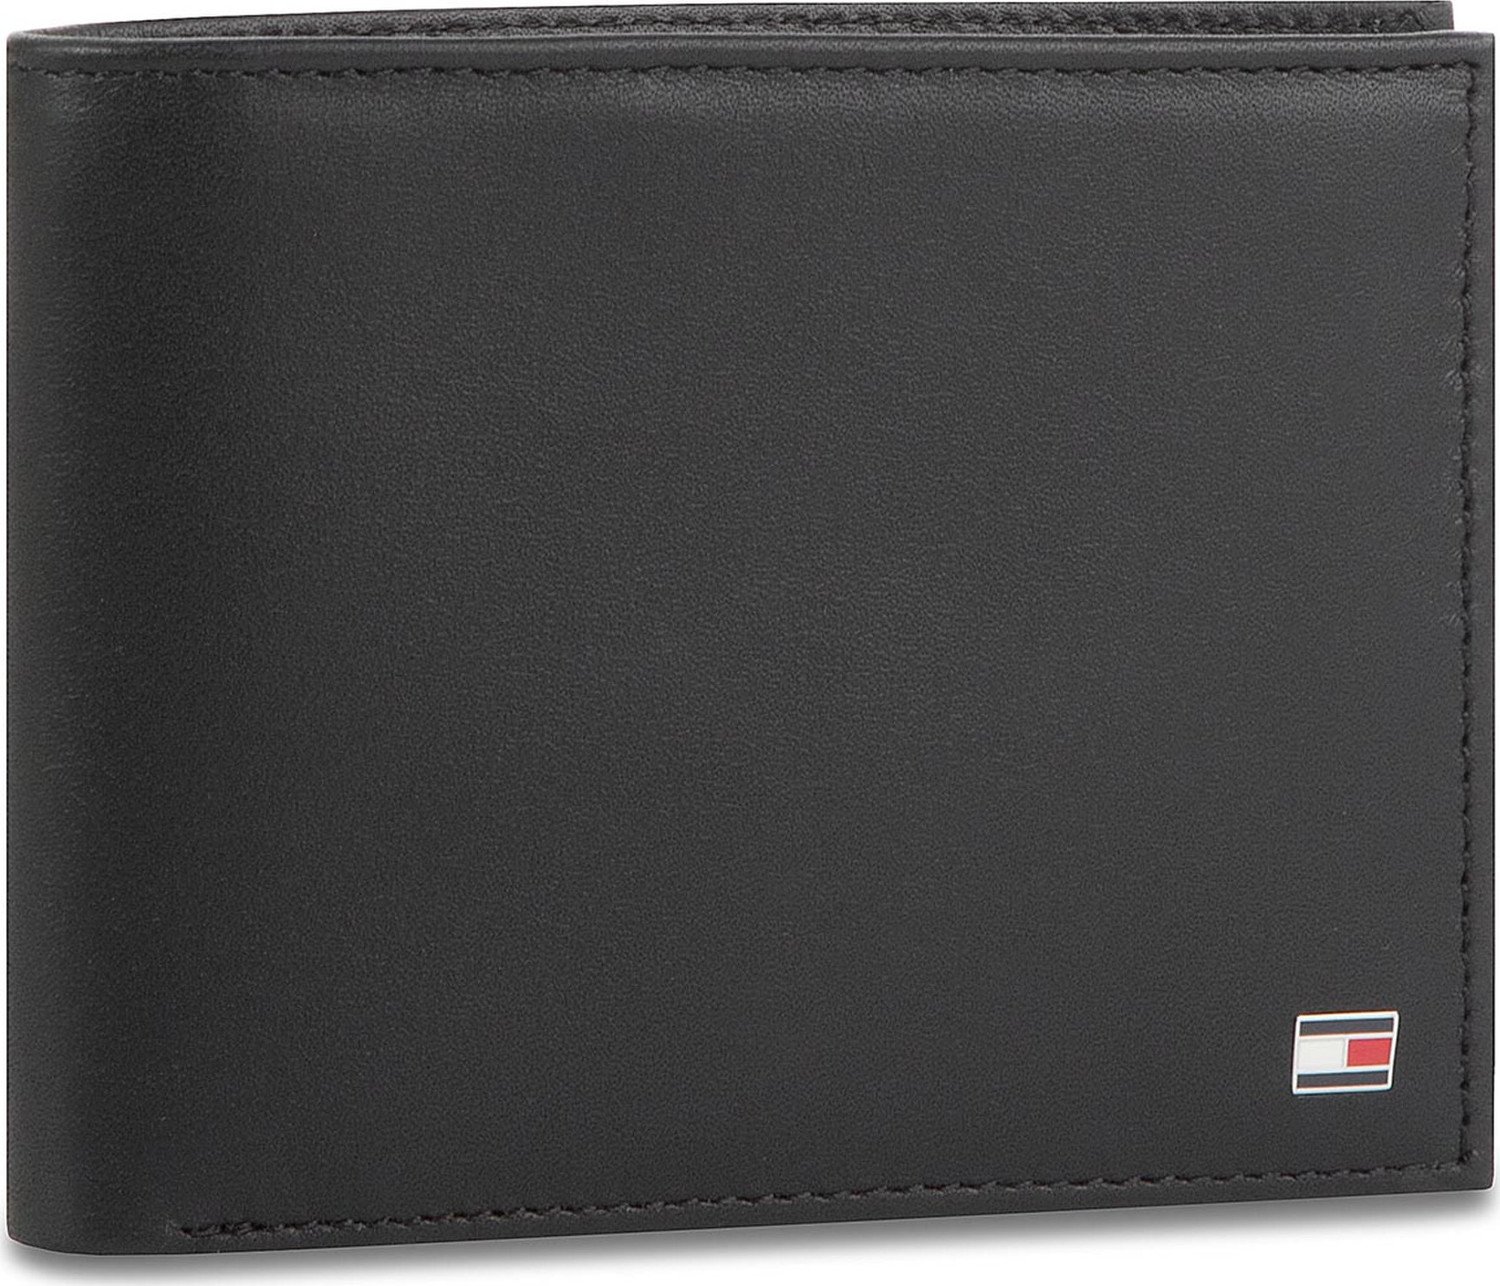 Velká pánská peněženka Tommy Hilfiger Eton Cc And Coin Pocket AM0AM00651 002